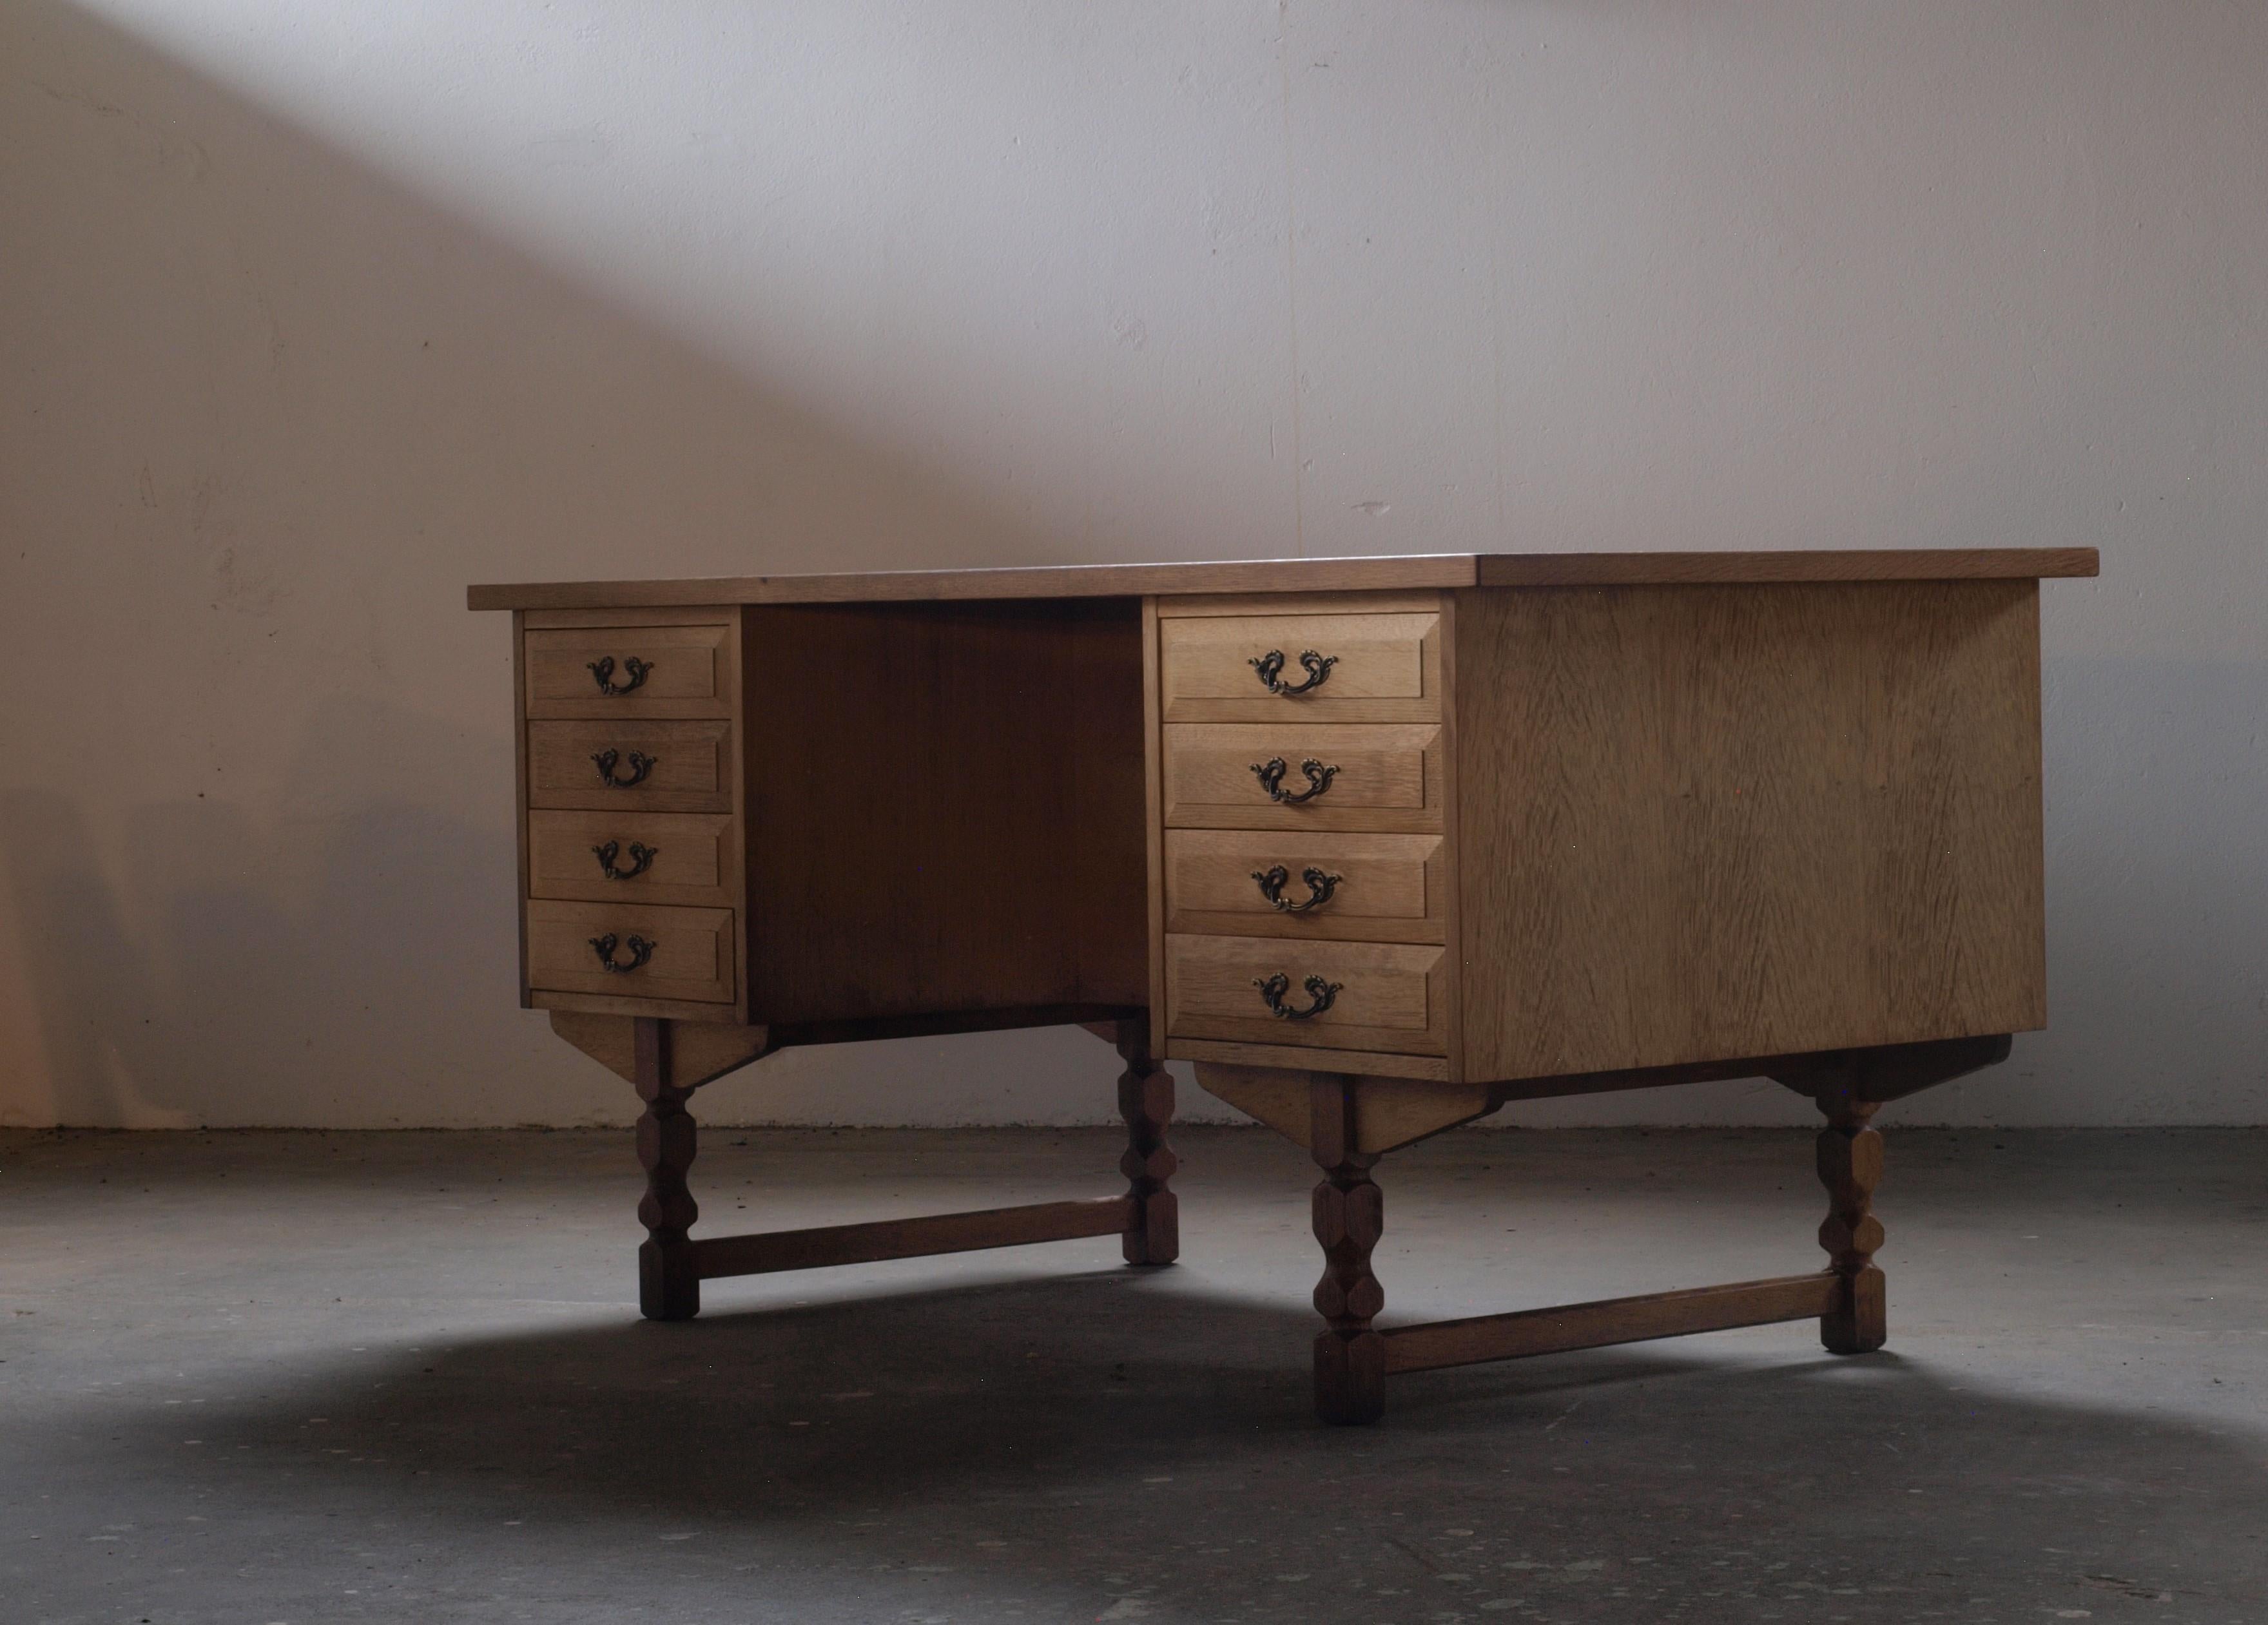 Bureau en chêne massif avec tiroirs, attribué au designer de meubles danois Henning Henry Kjærnulf, une pièce fascinante. Cette création mêle harmonieusement des éléments baroques audacieux à la finesse du modernisme du milieu du siècle, ce qui